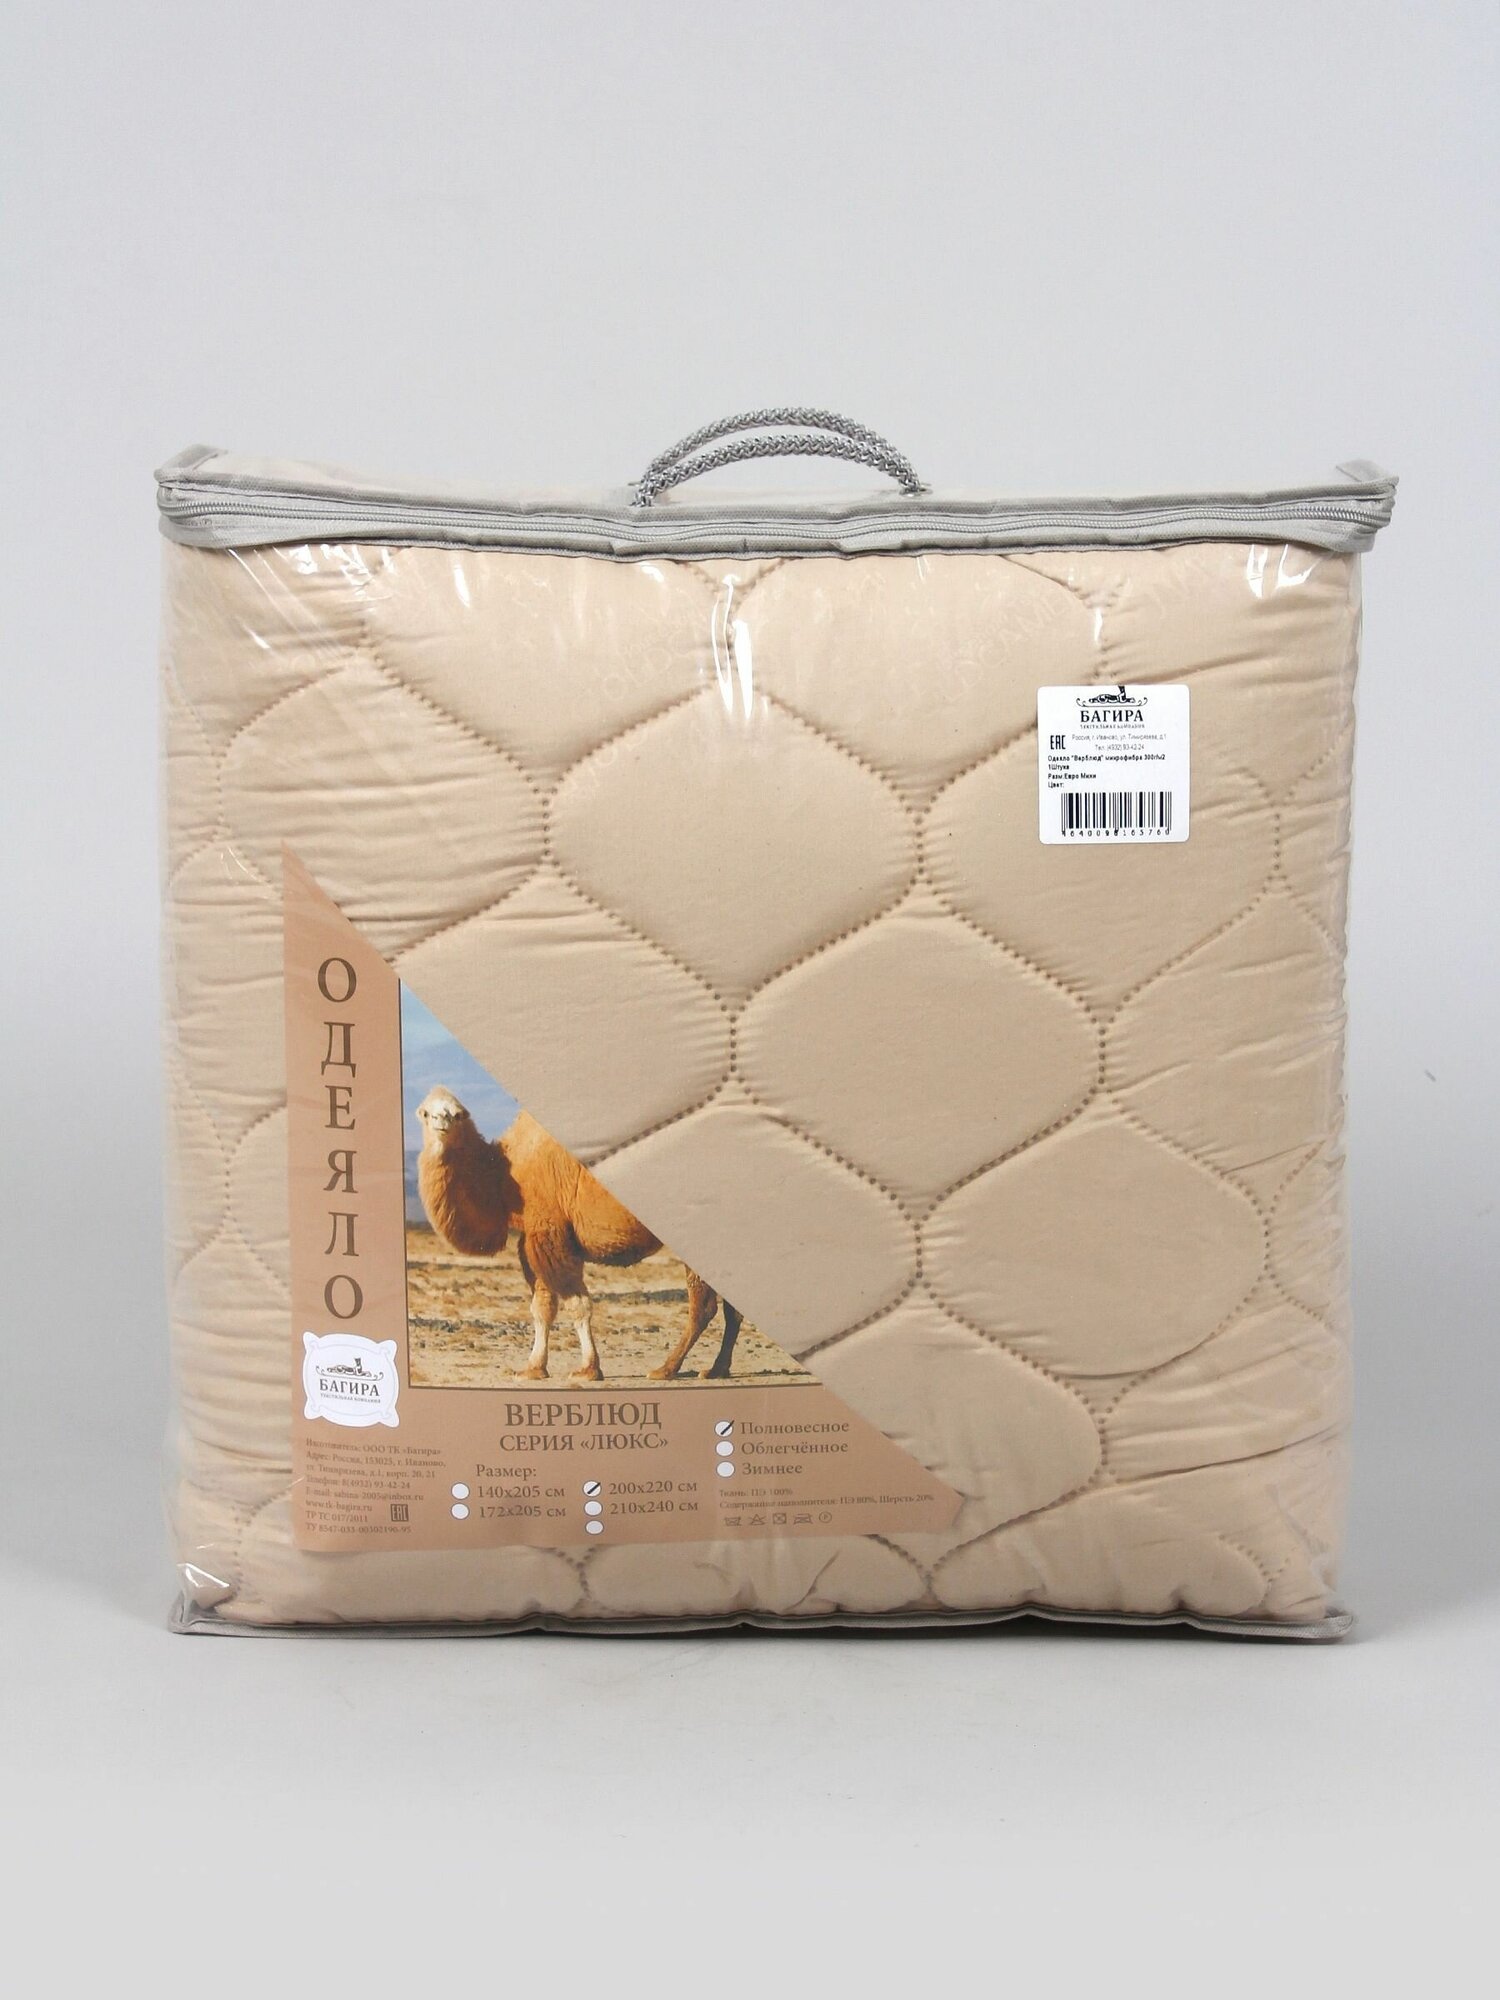 Одеяло "Верблюжья шерсть" полновесное, 2-х спальное, в микрофибре, плотность 300 г/м2 - фотография № 10